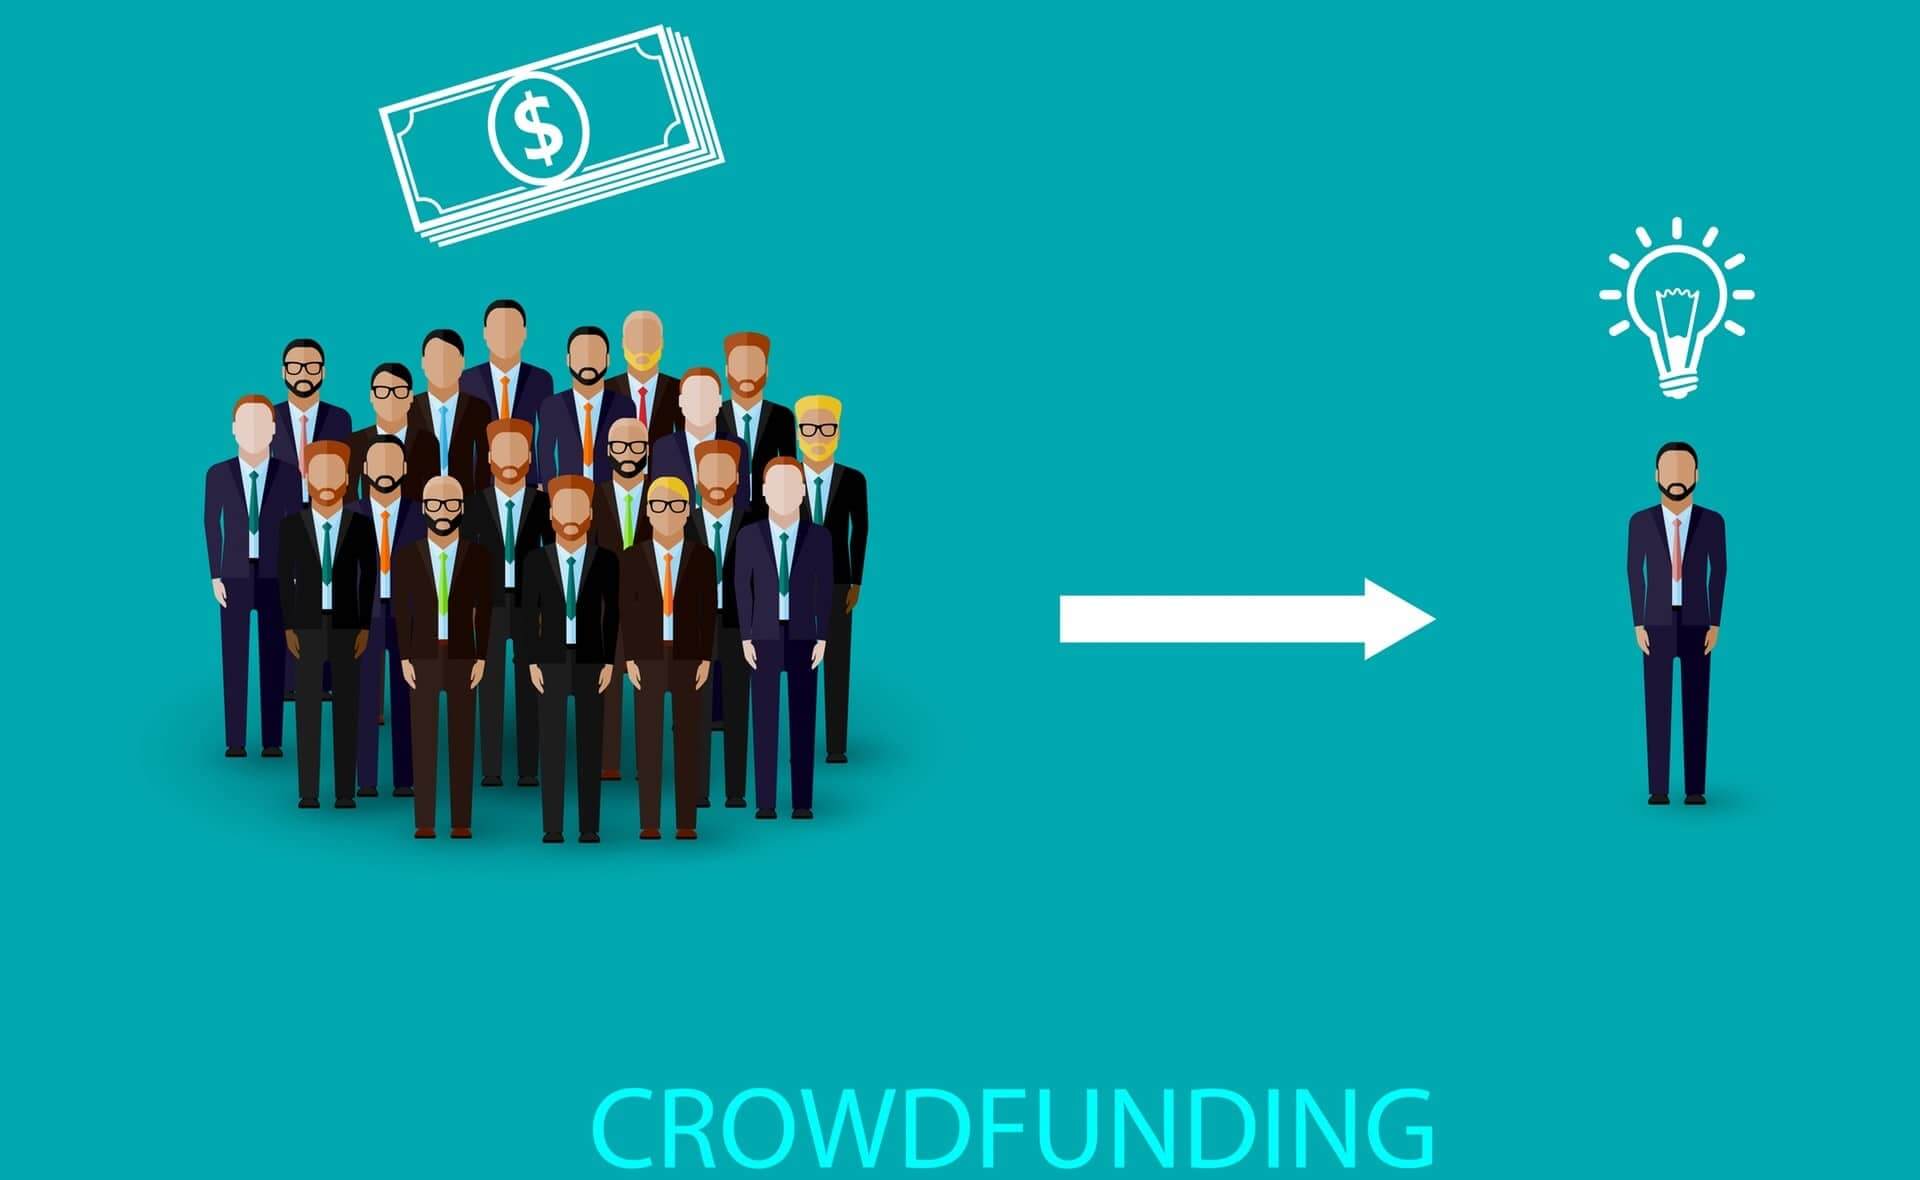 Dit worden de crowdfunding trends van 2015